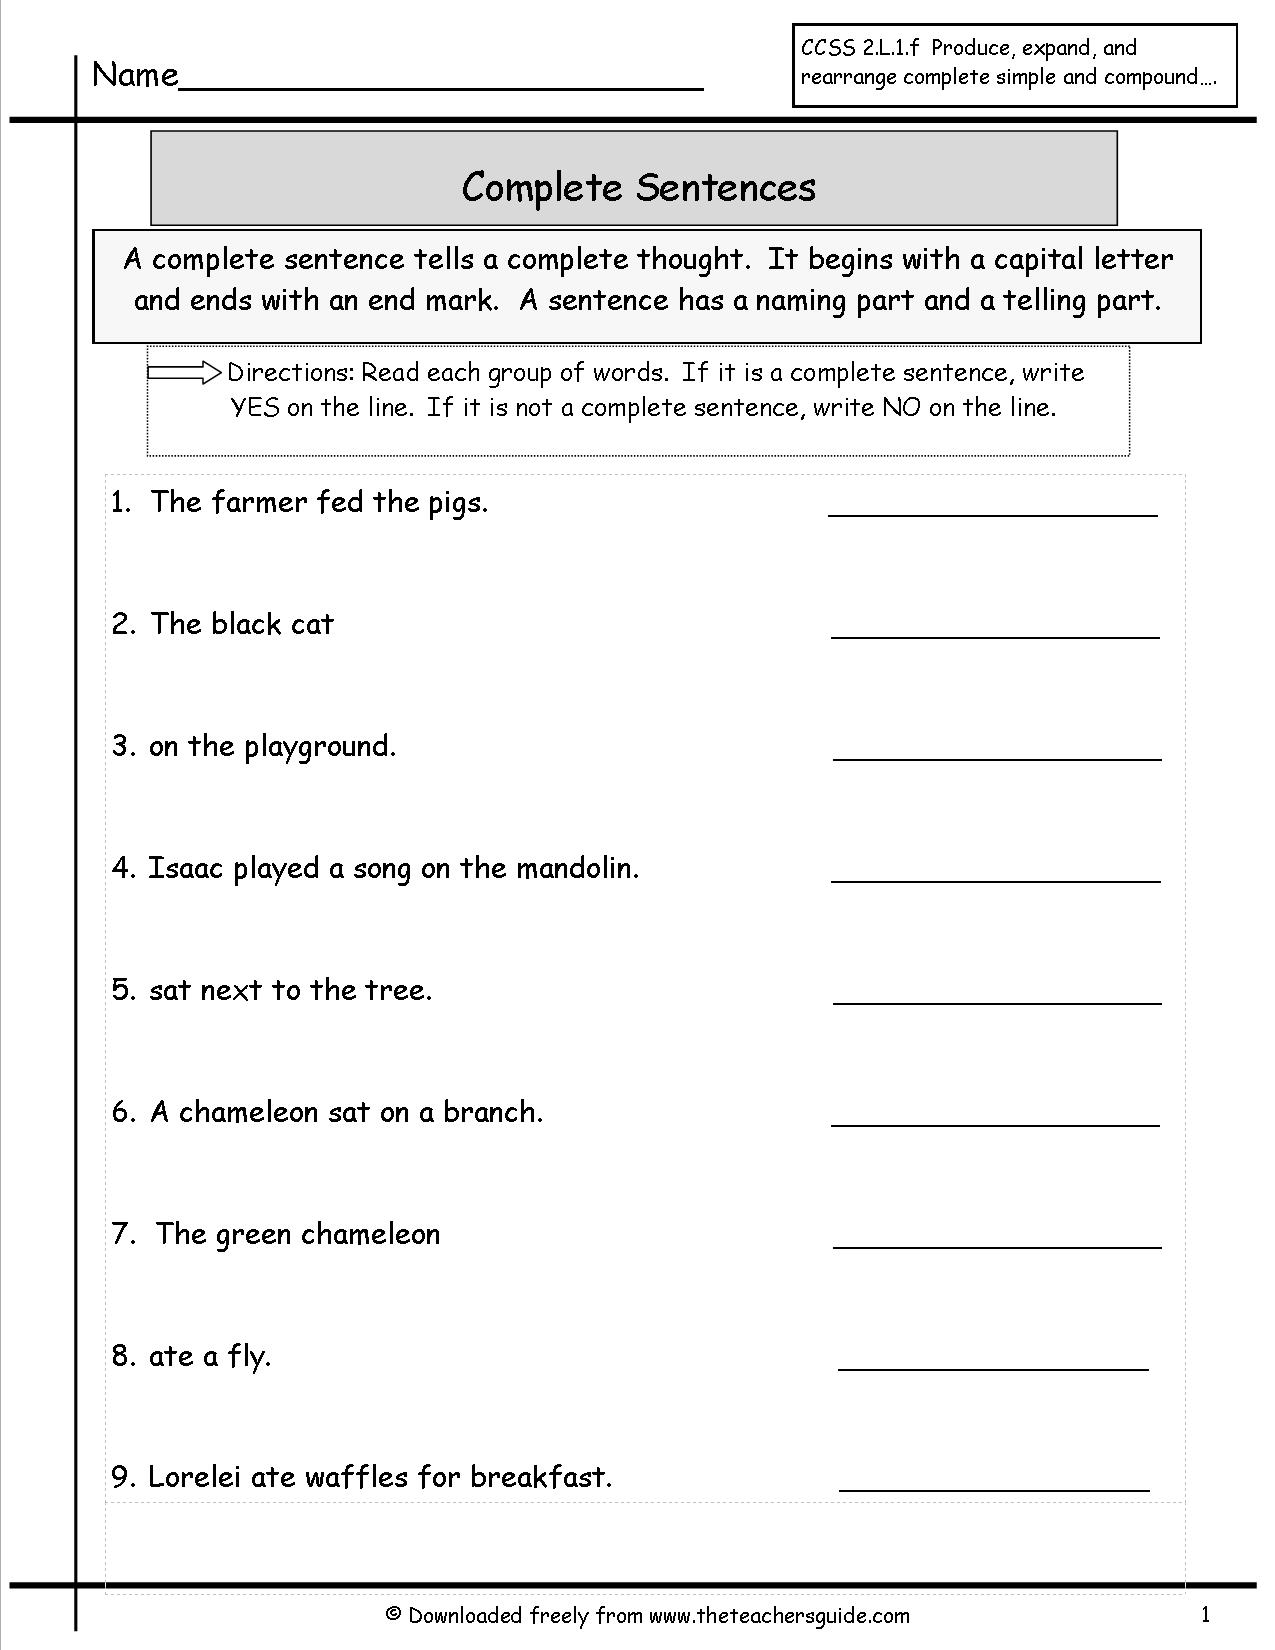 11 Best Images Of Social Studies Practice Worksheets Free Printable GED Practice Test